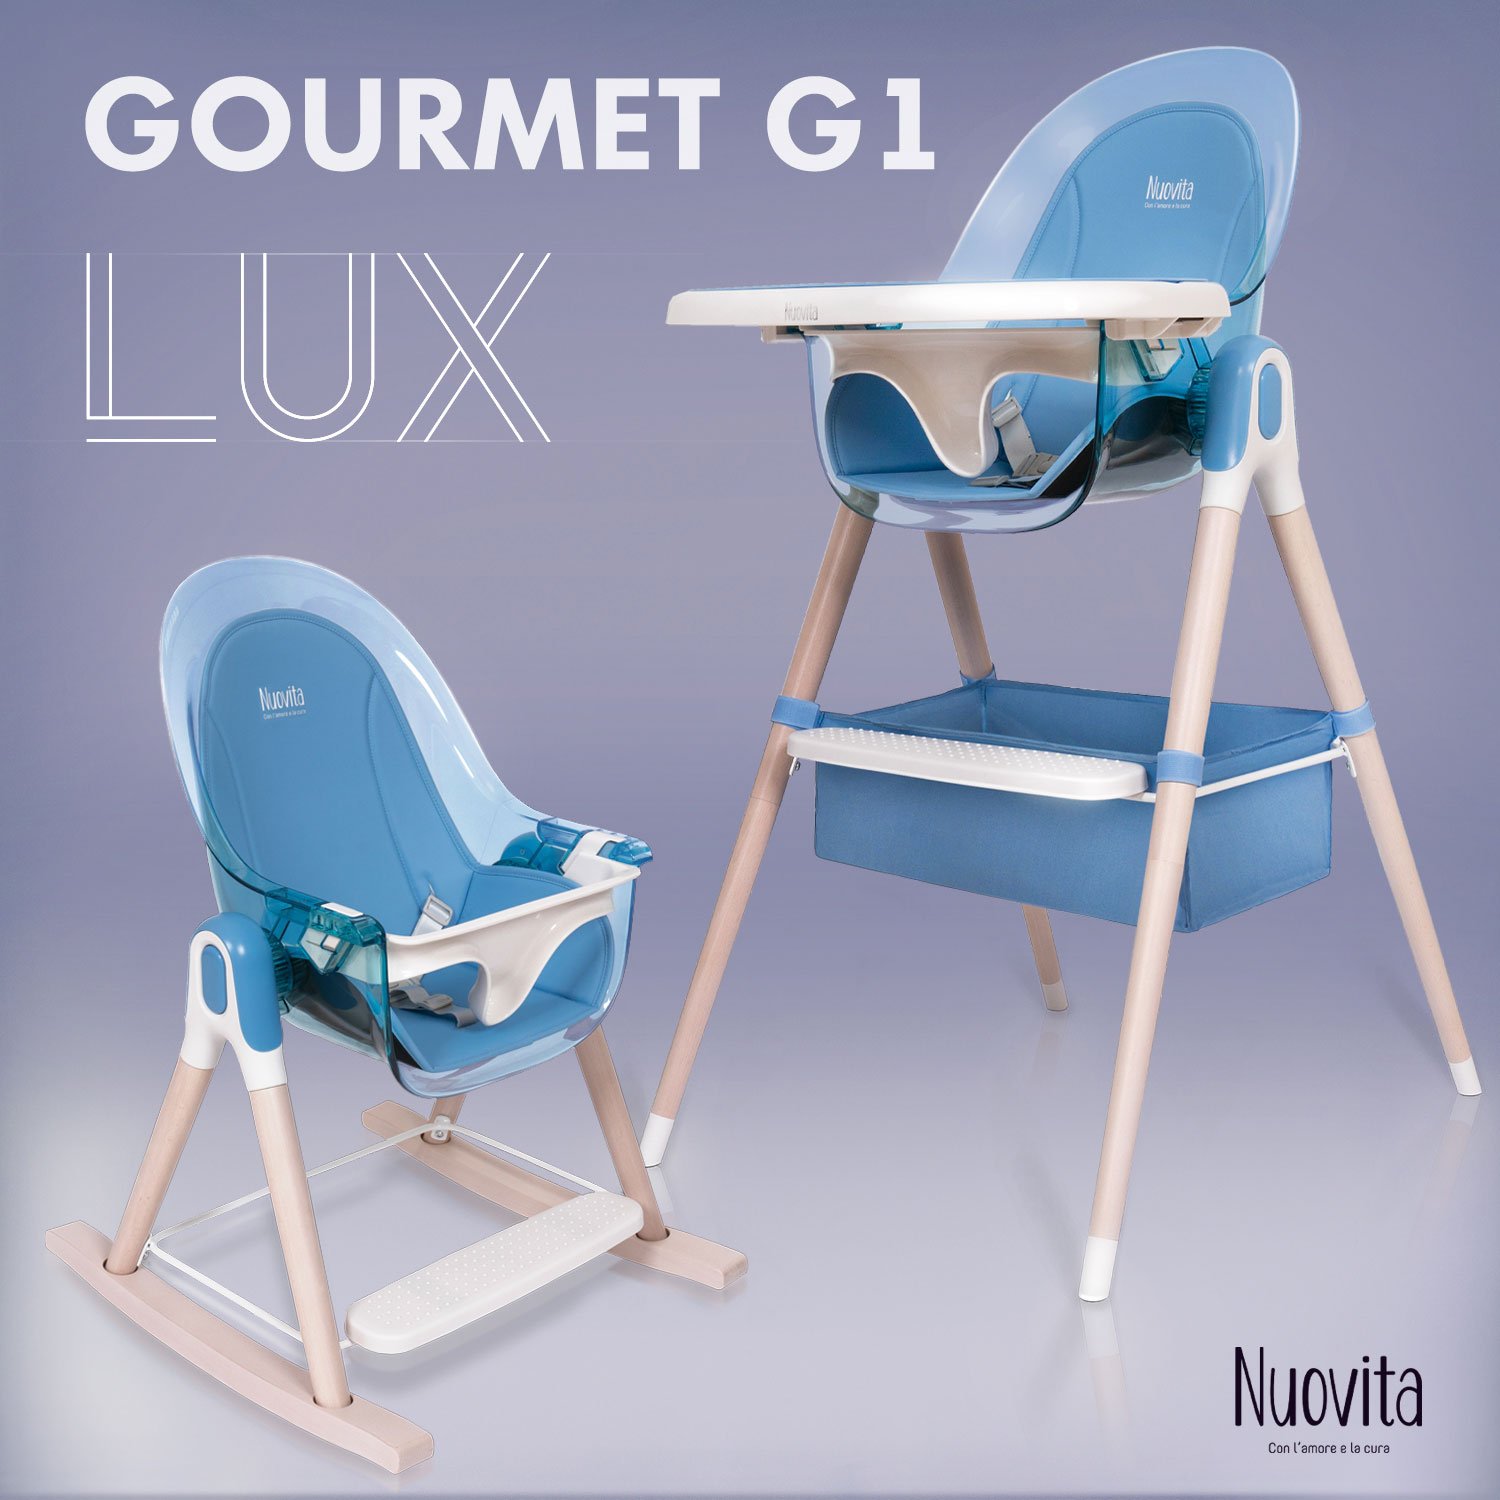 Стульчик для кормления 3 в 1 Nuovita Gourmet G1 Lux (Blu/Голубой) стульчик для кормления nuovita gourmet g1 standart 2 в 1